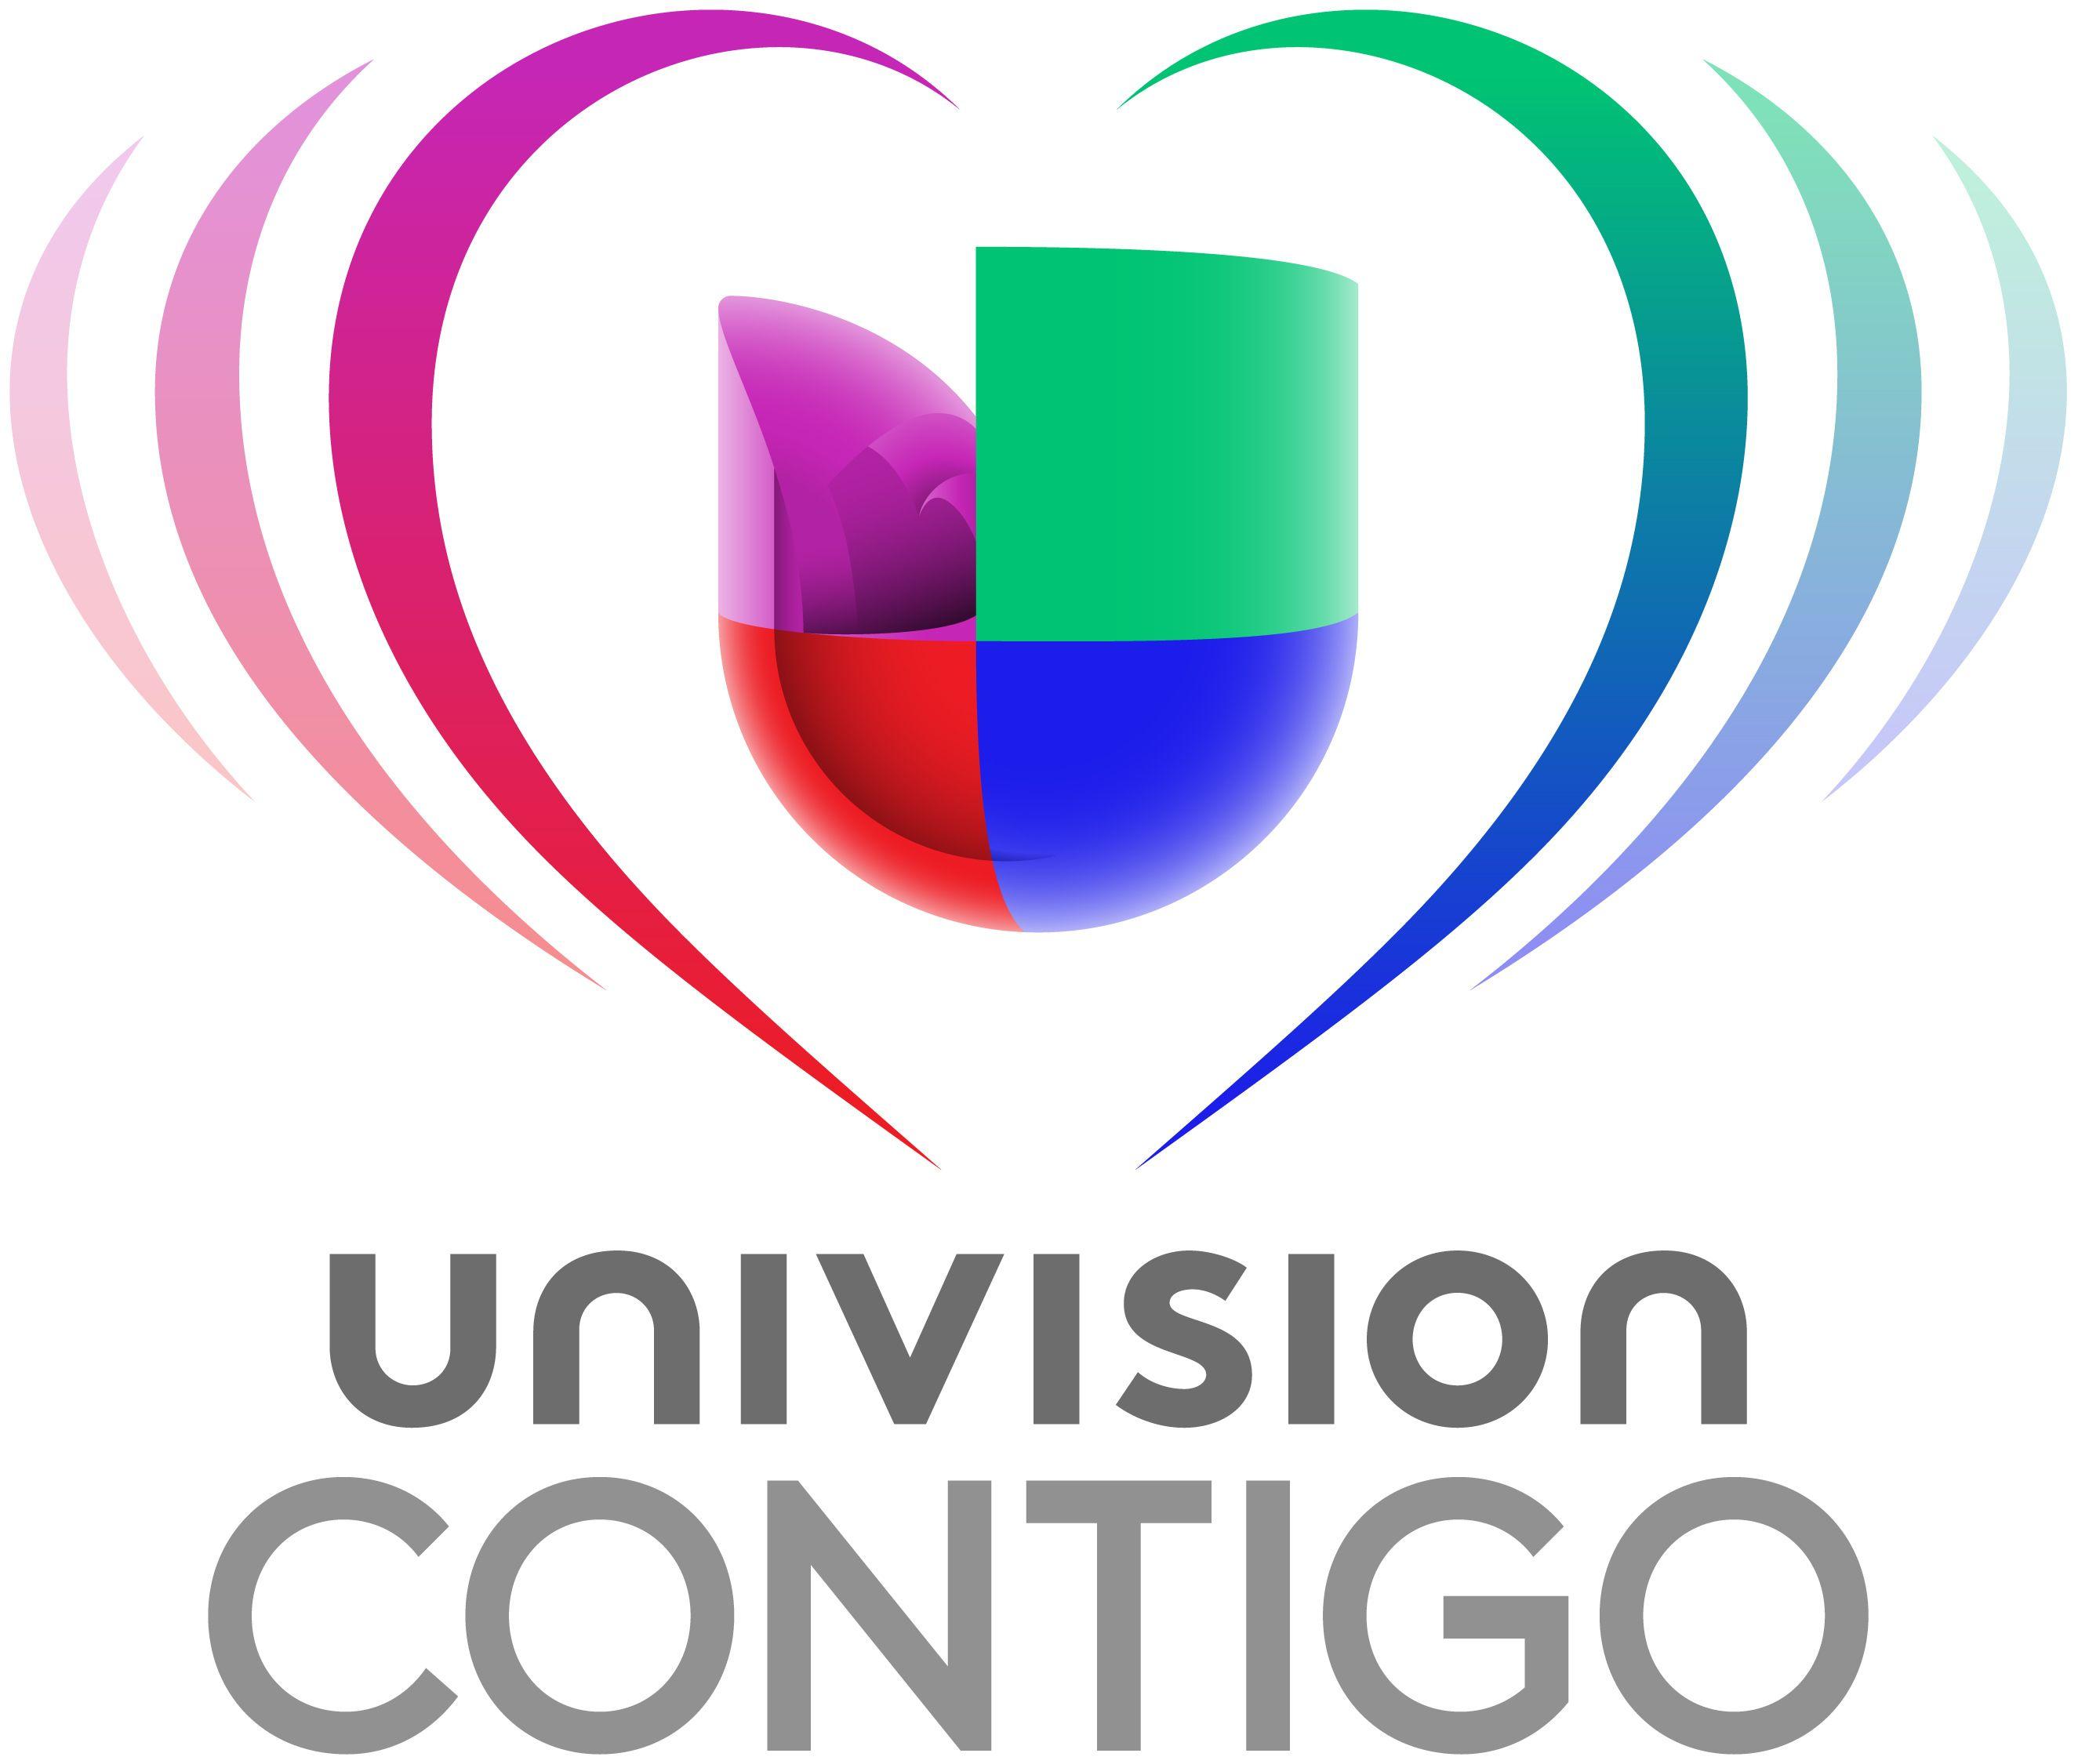 Contigo Logo - Univision Communications Inc. Launches “Univision Contigo” Expanding